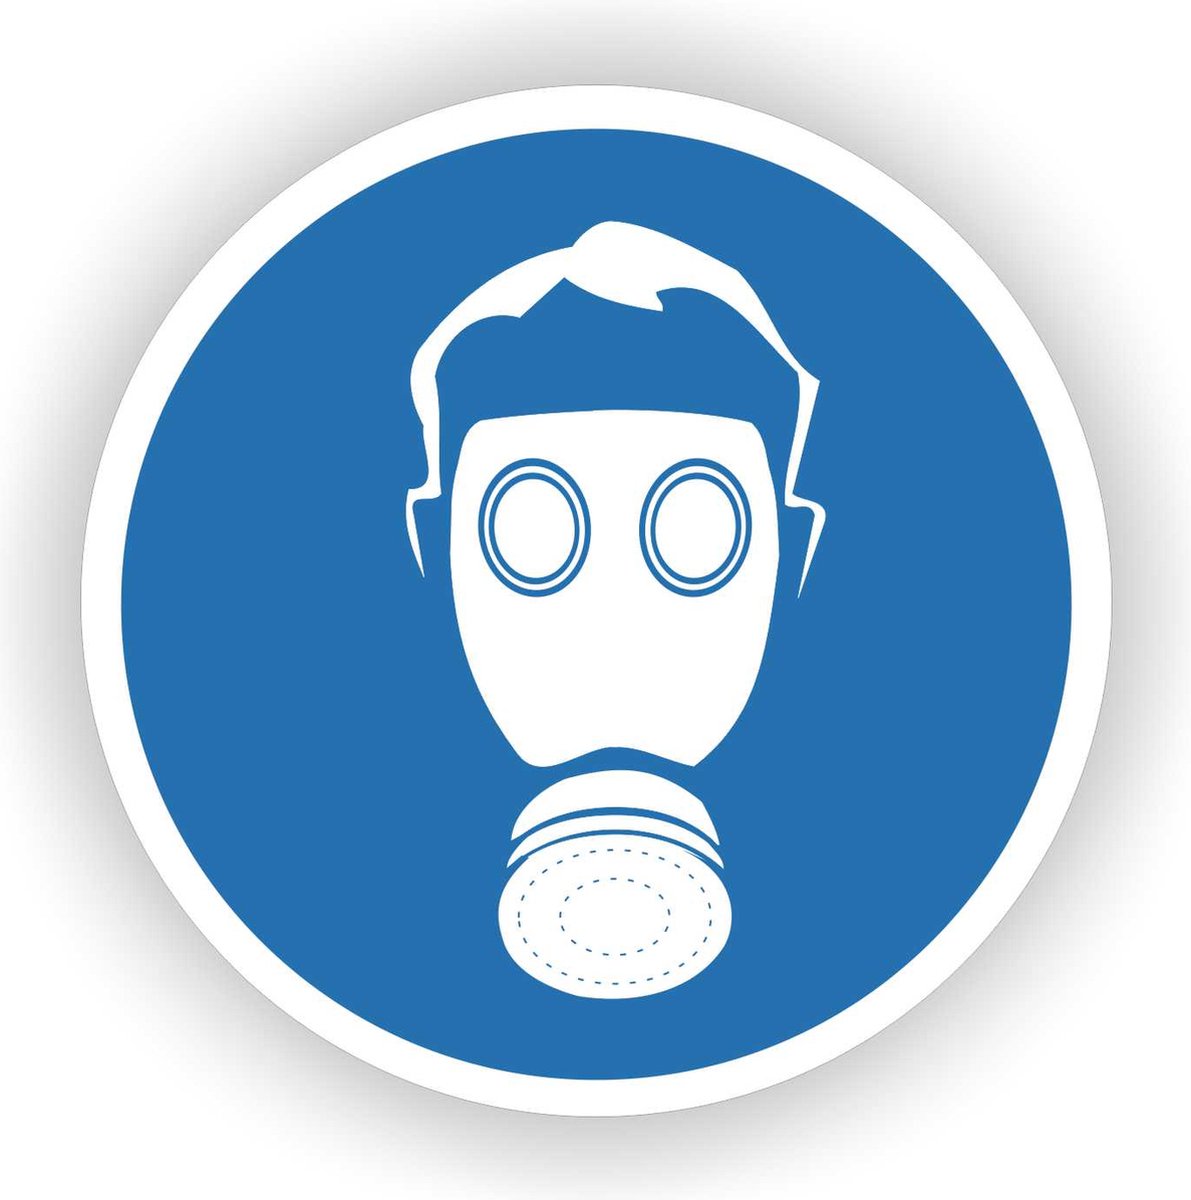 Autocollant masque à gaz obligatoire - autocollants d'obligation : Promociel